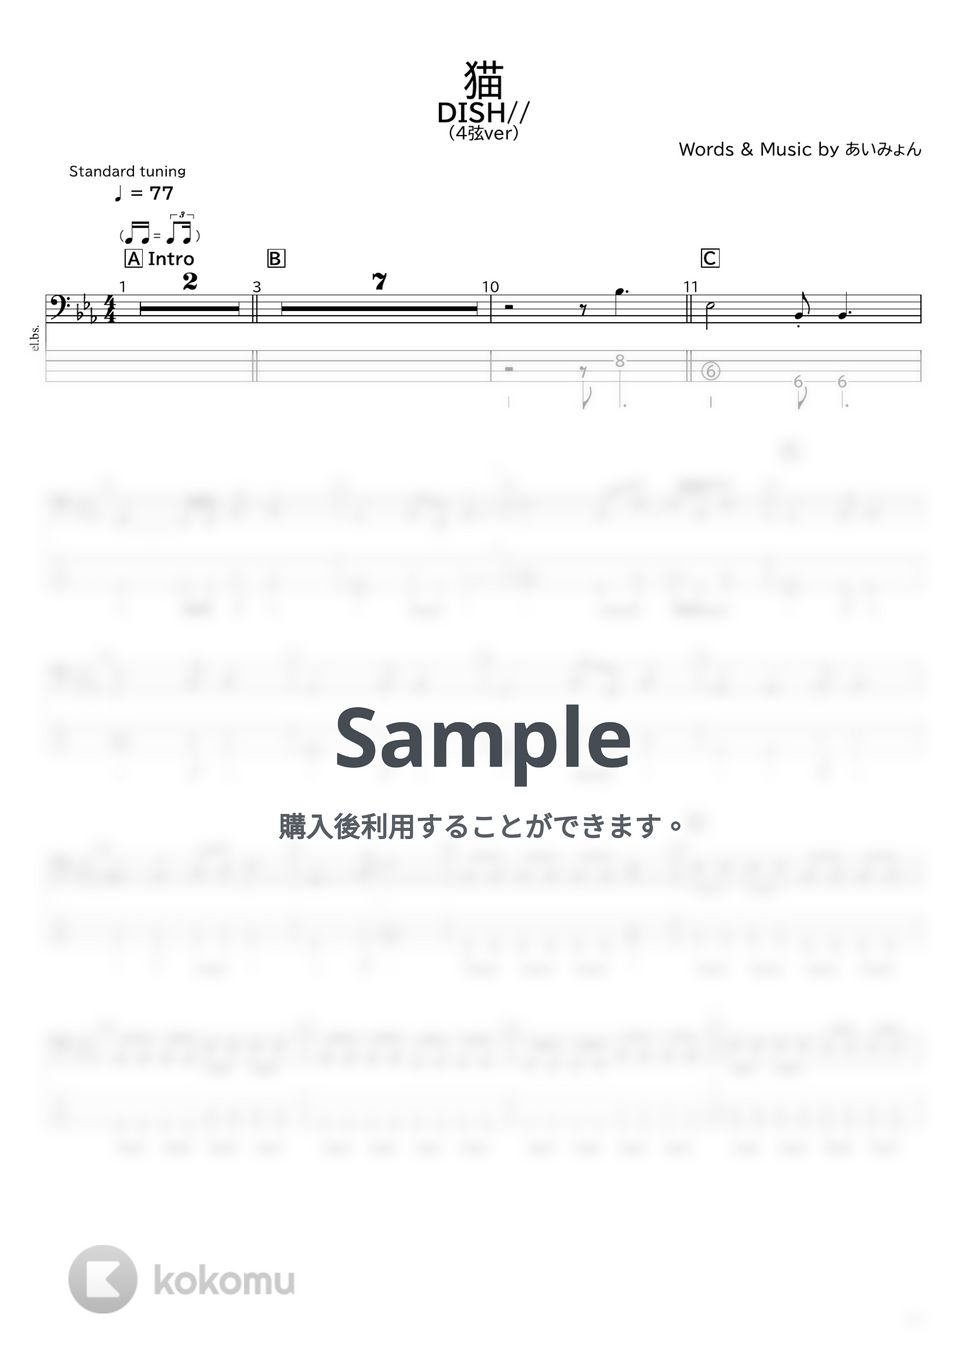 DISH// - 猫(4弦ver) by たぶべー@財布に優しいベース用楽譜屋さん